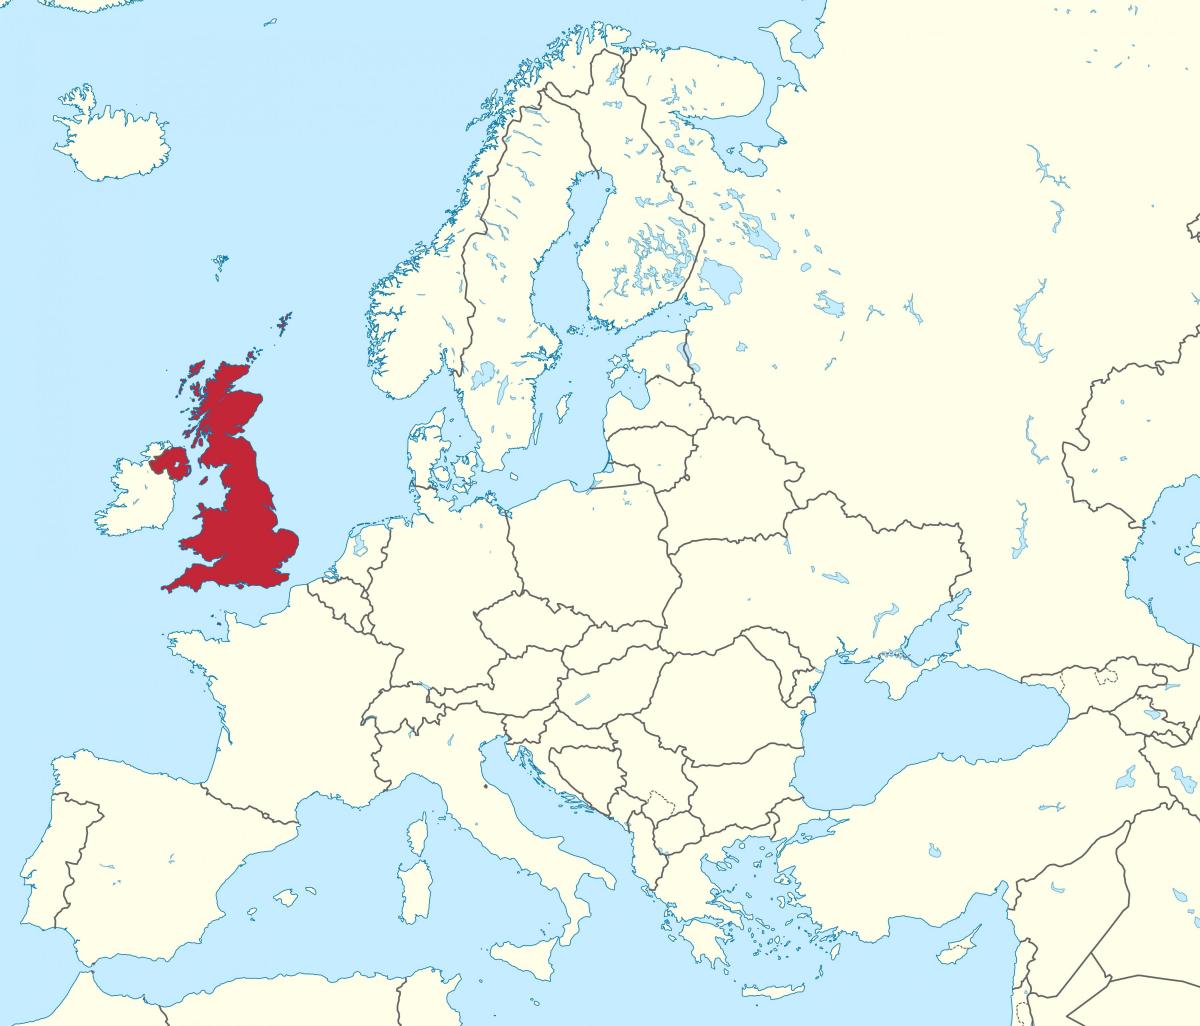 Ubicación del Reino Unido (UK) en el mapa de Europa